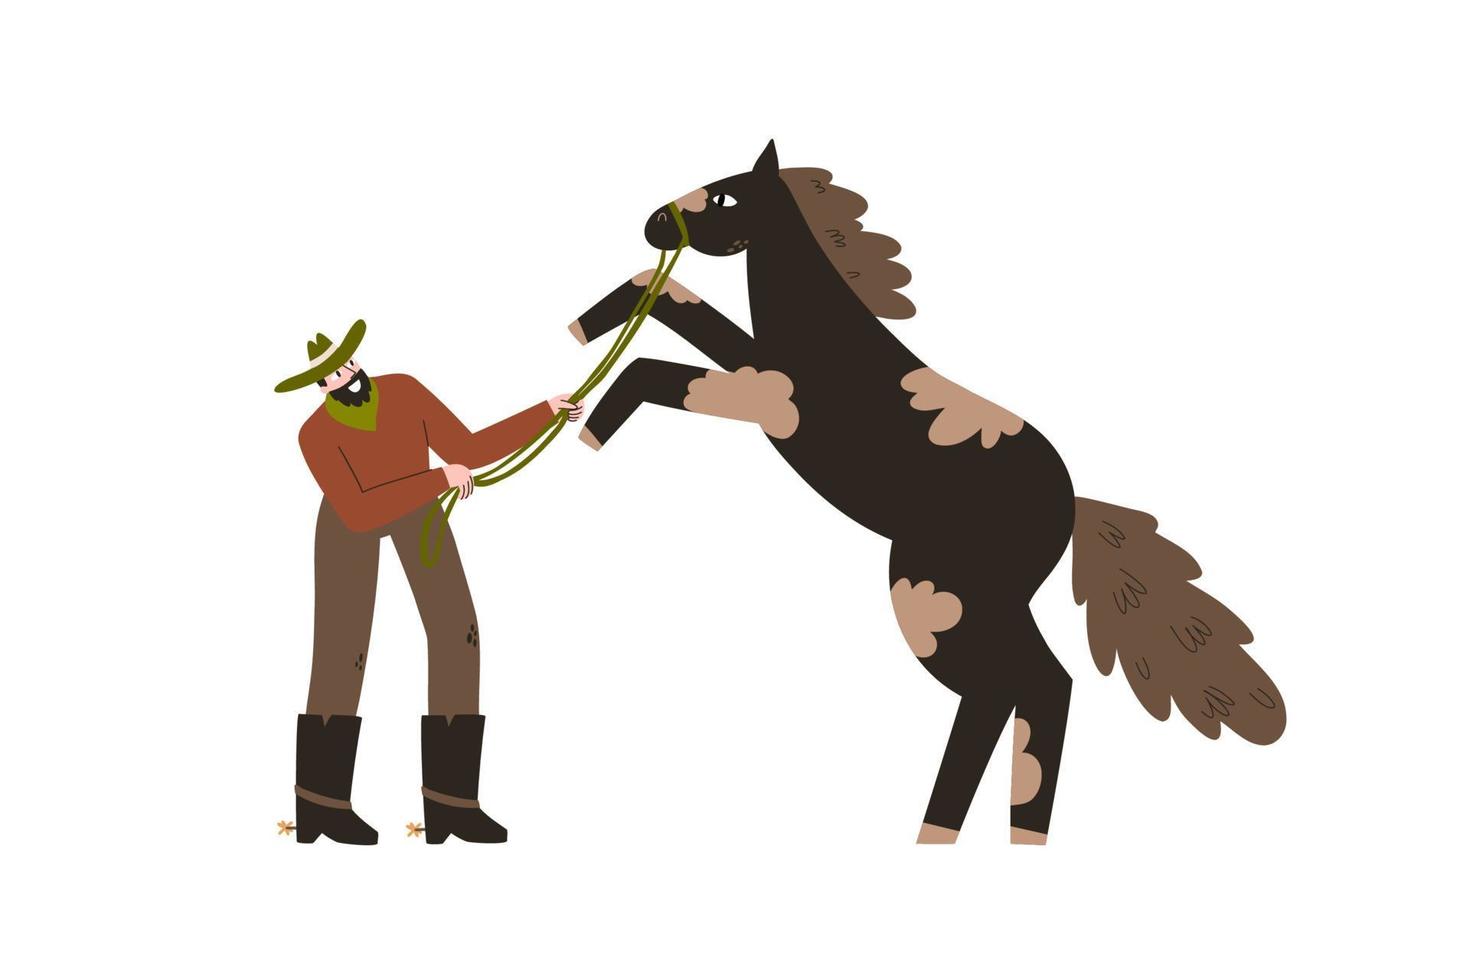 cowboy doma um cavalo selvagem. roupas e sapatos de cowboy. Oeste selvagem. ilustração vetorial isolada no fundo branco vetor